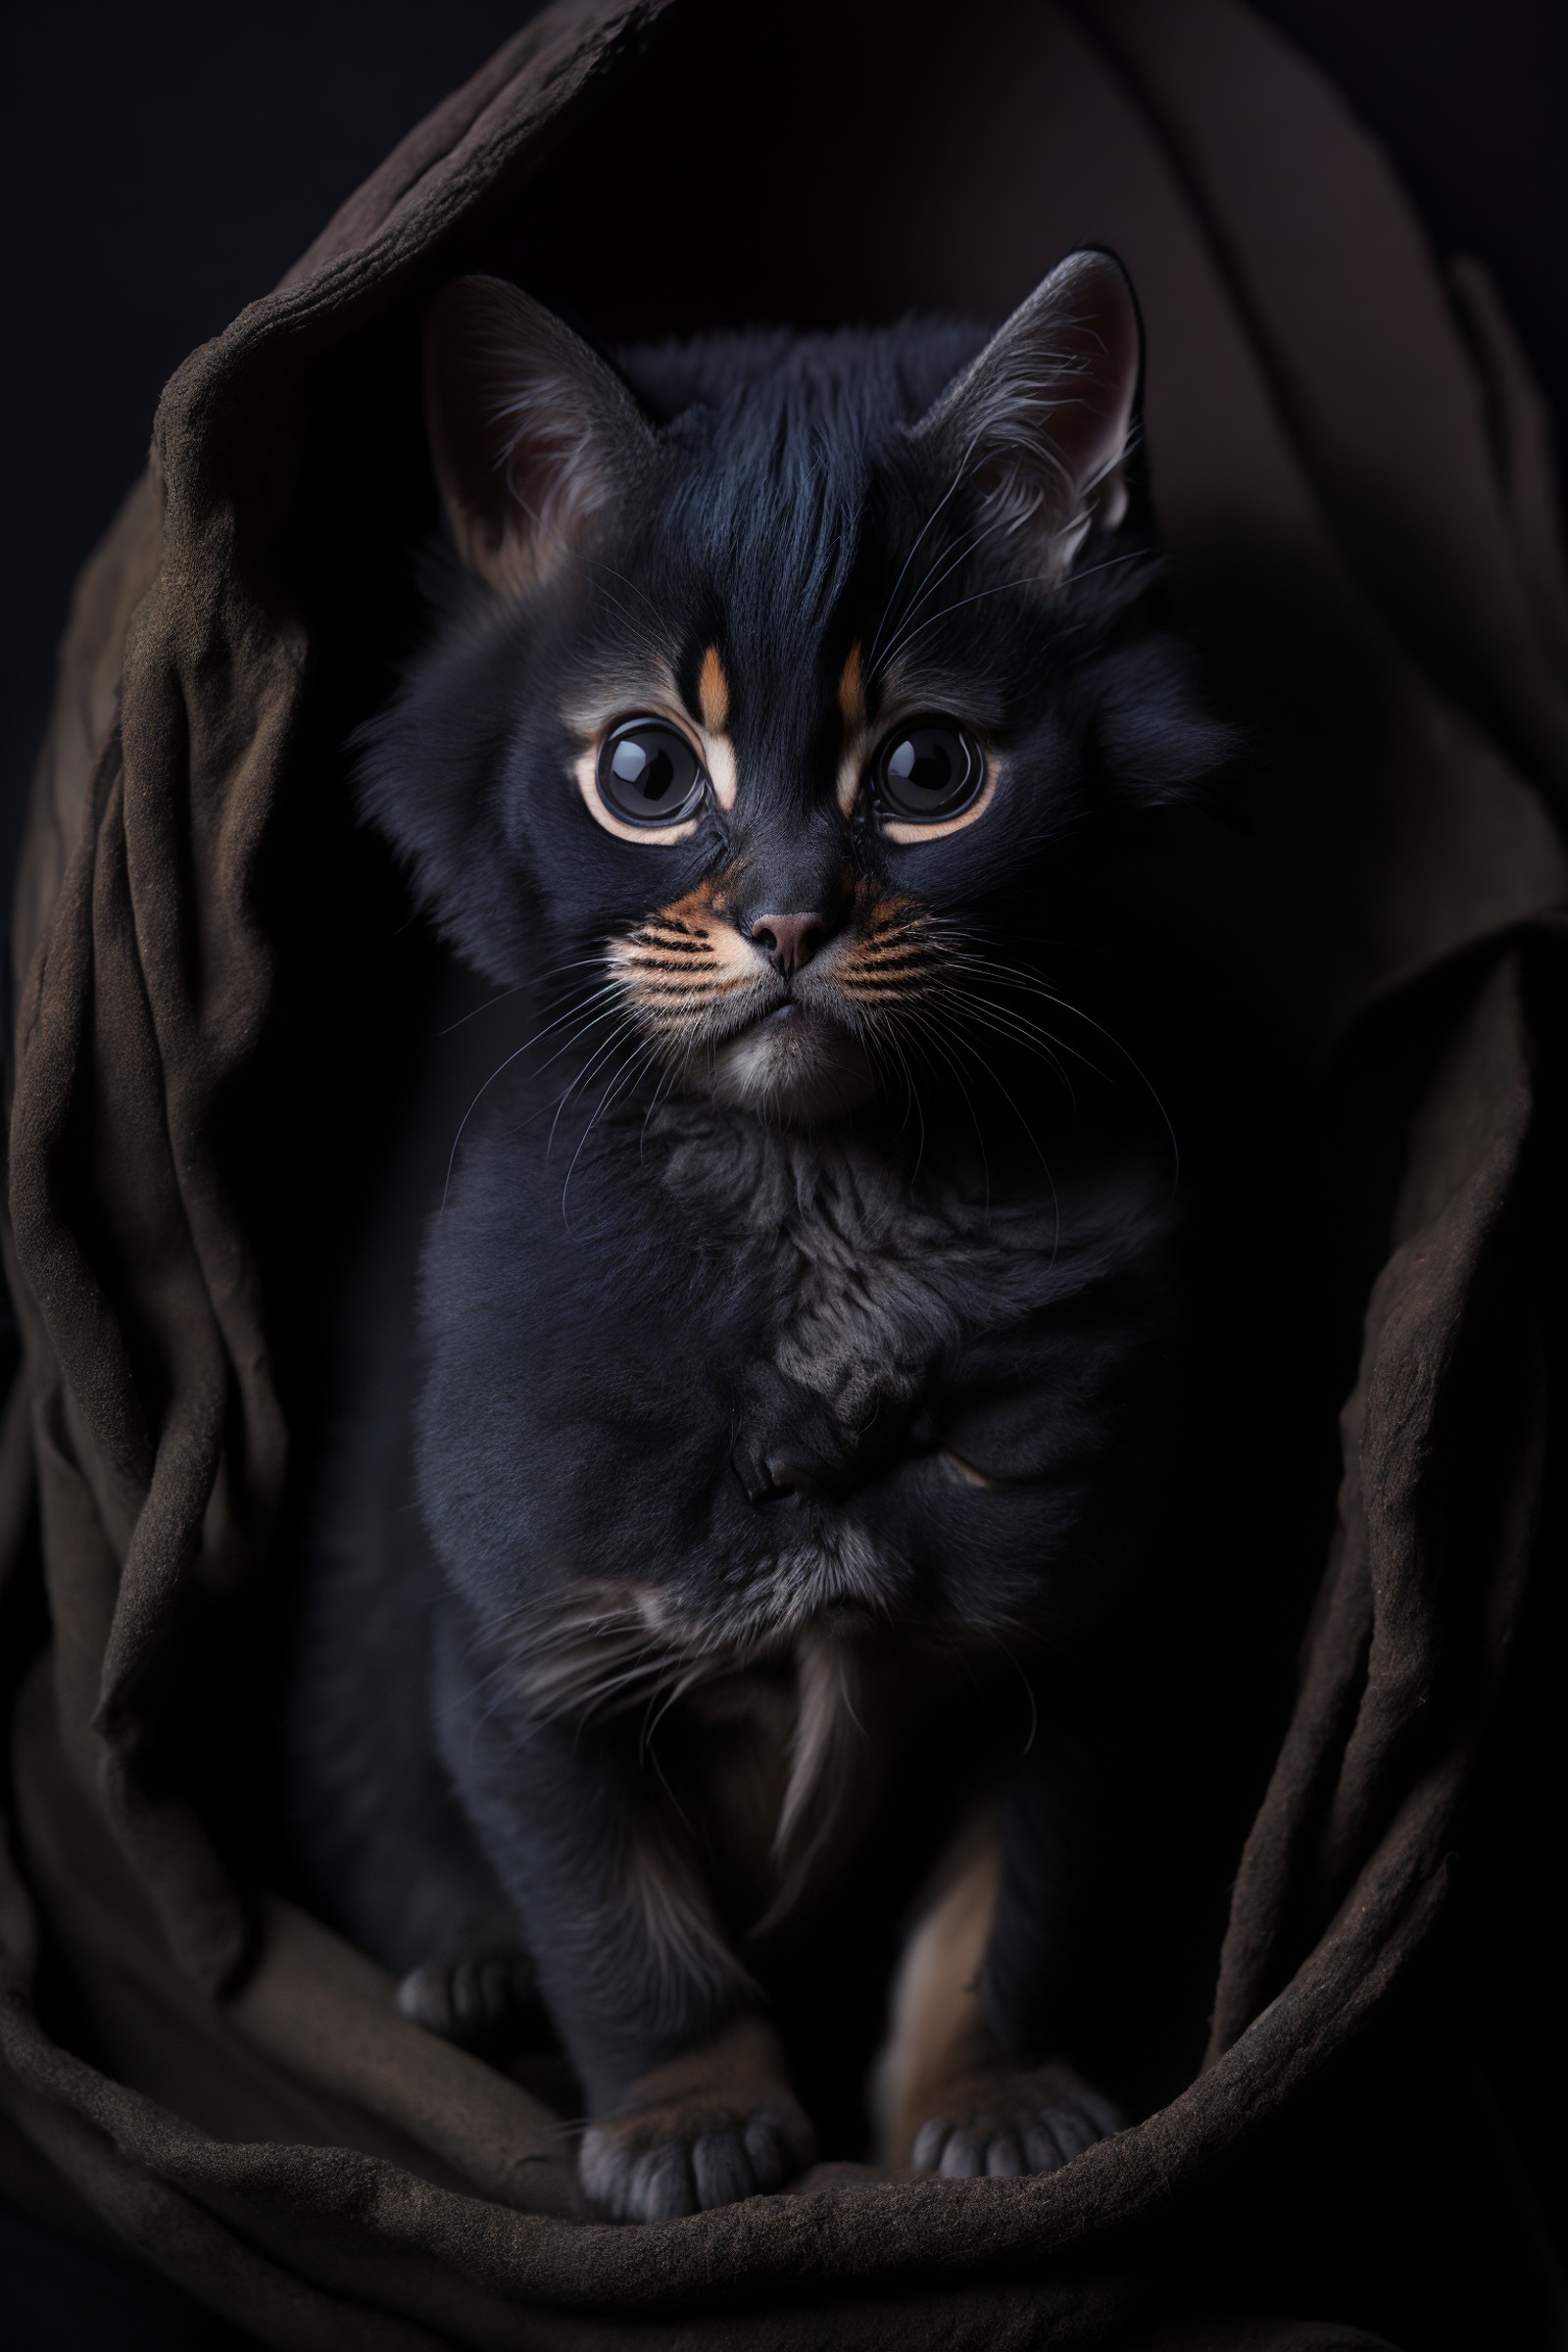 award winning portrait of a kitten